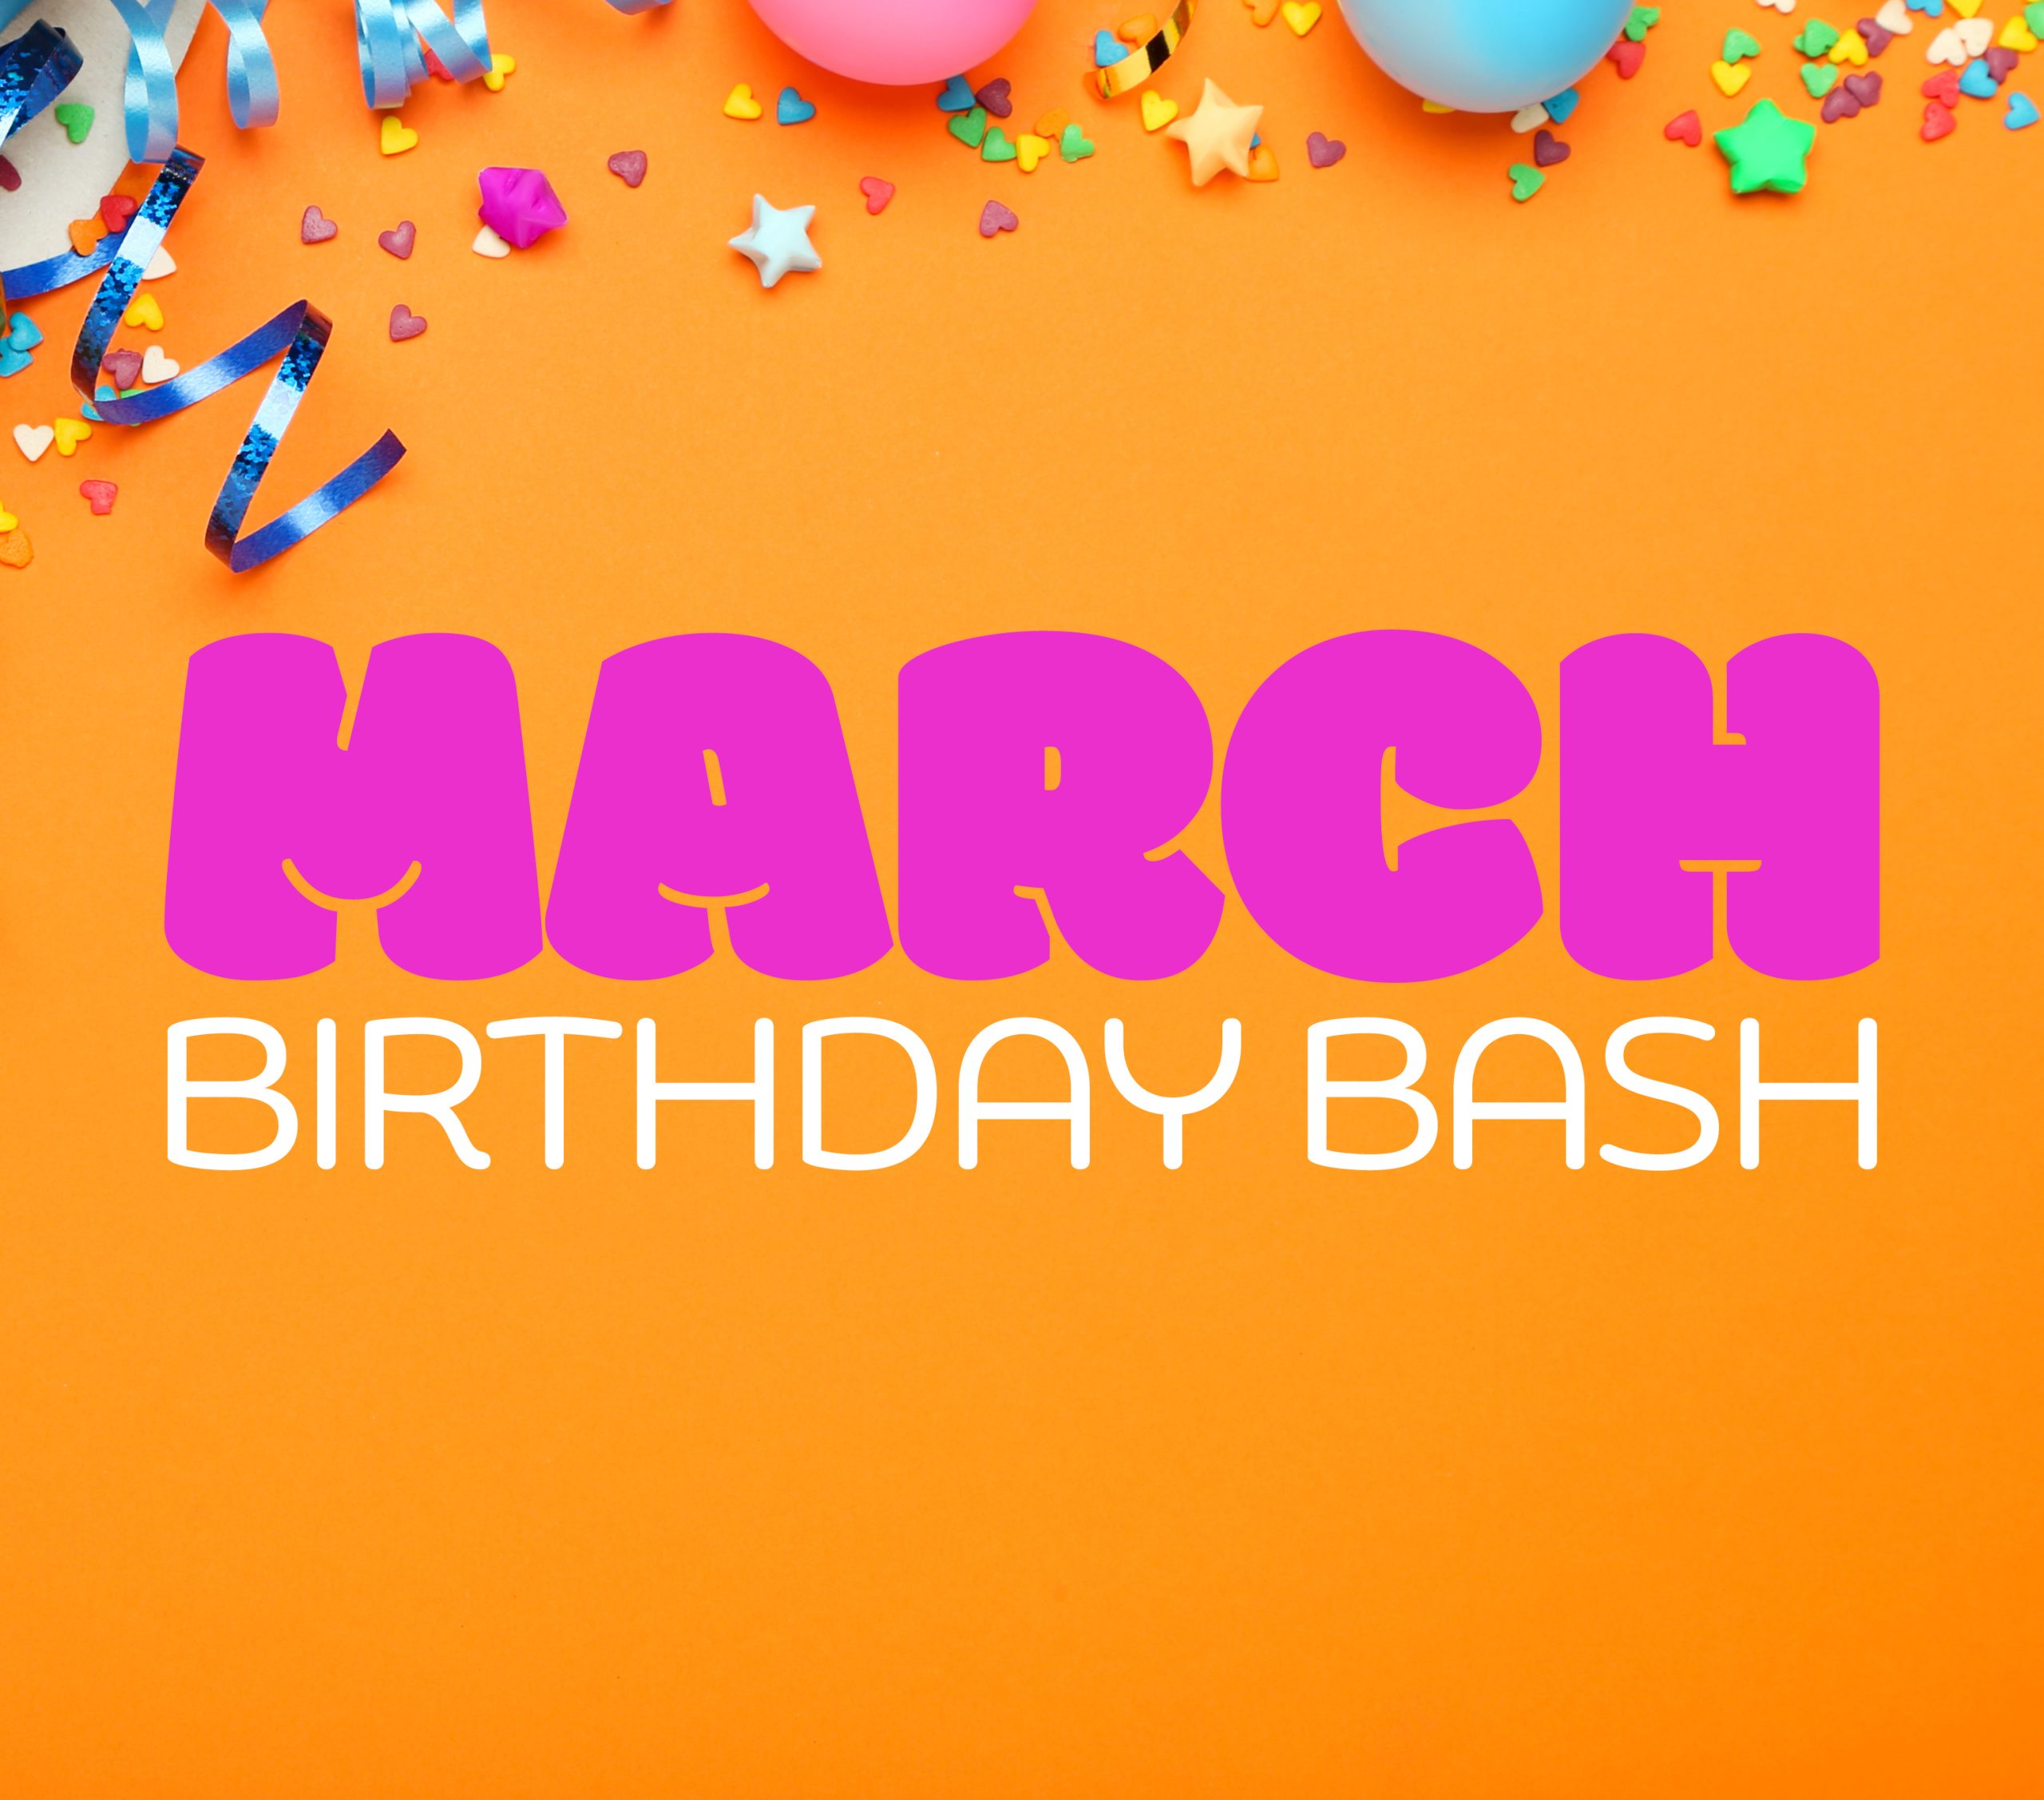 March Birthday Bash